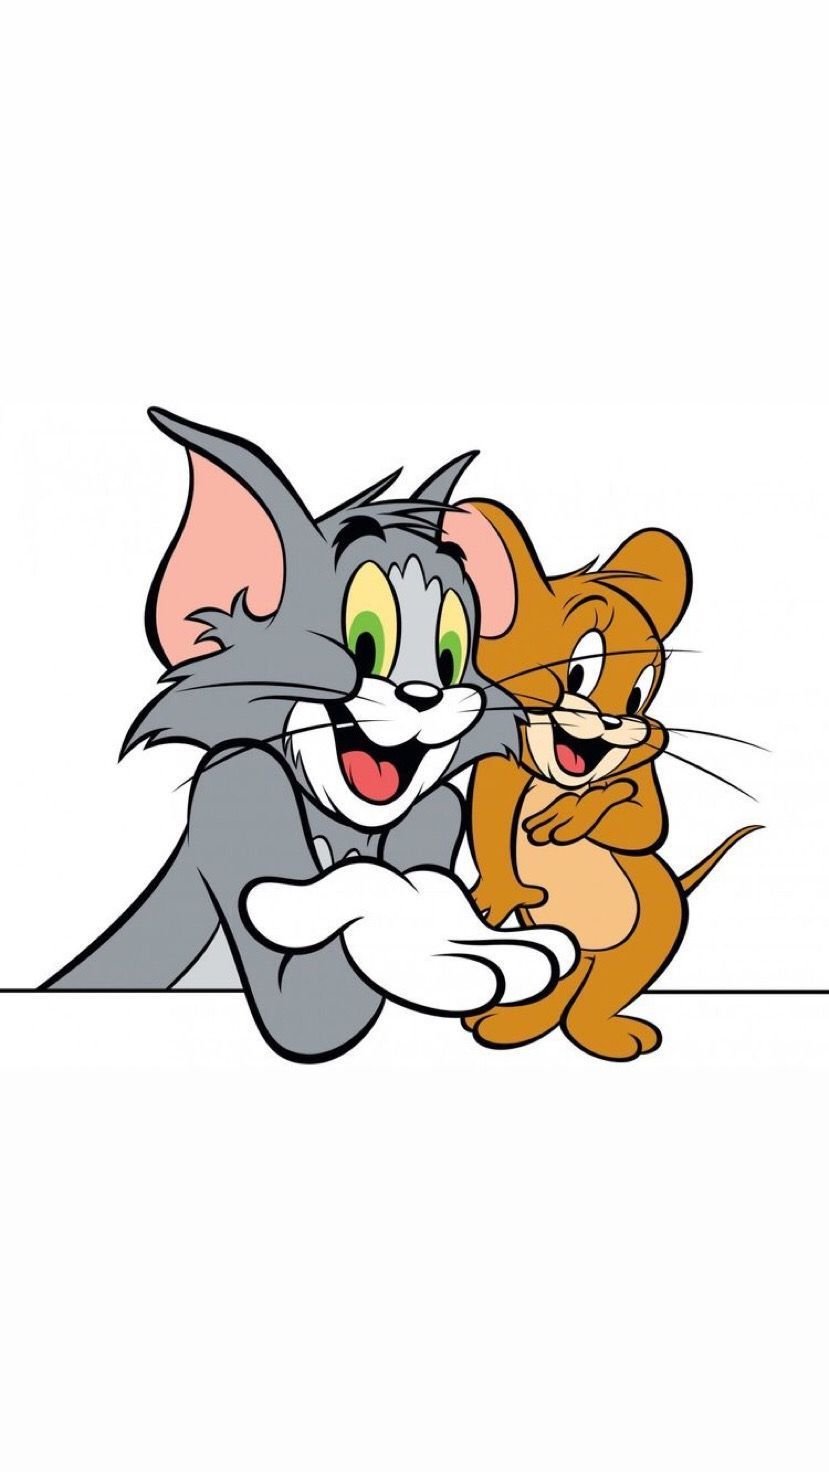 黒川夏 on Twitter Tom and Jerry illustration Illustrator anime  httpstcoKjRWaPRvvy httpstcoFiVVUsAQlL  Twitter